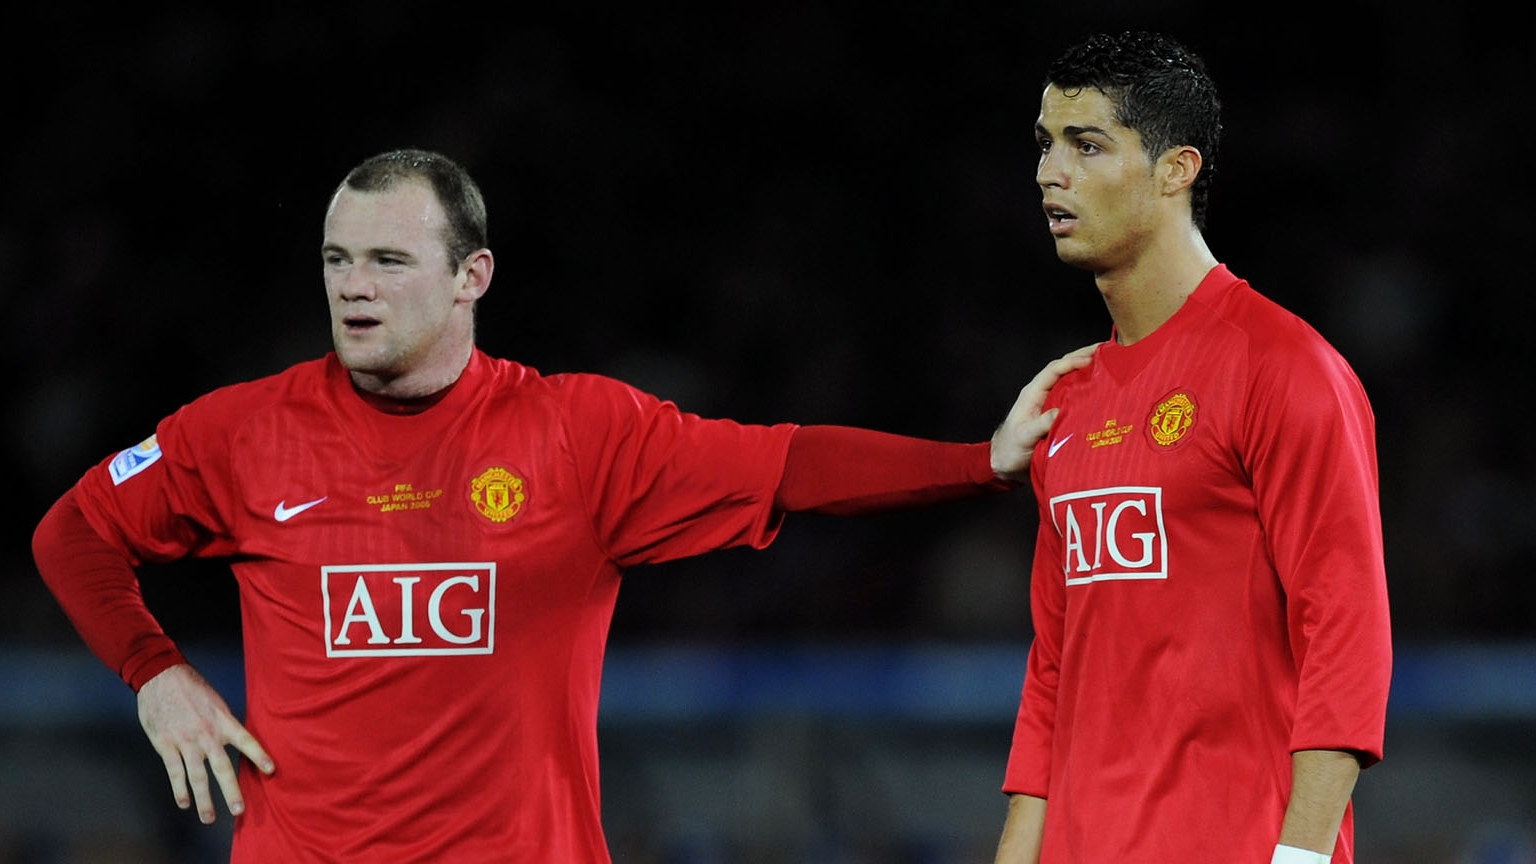 Ambos futbolistas compartieron vestuario durante su paso por el United (Getty)